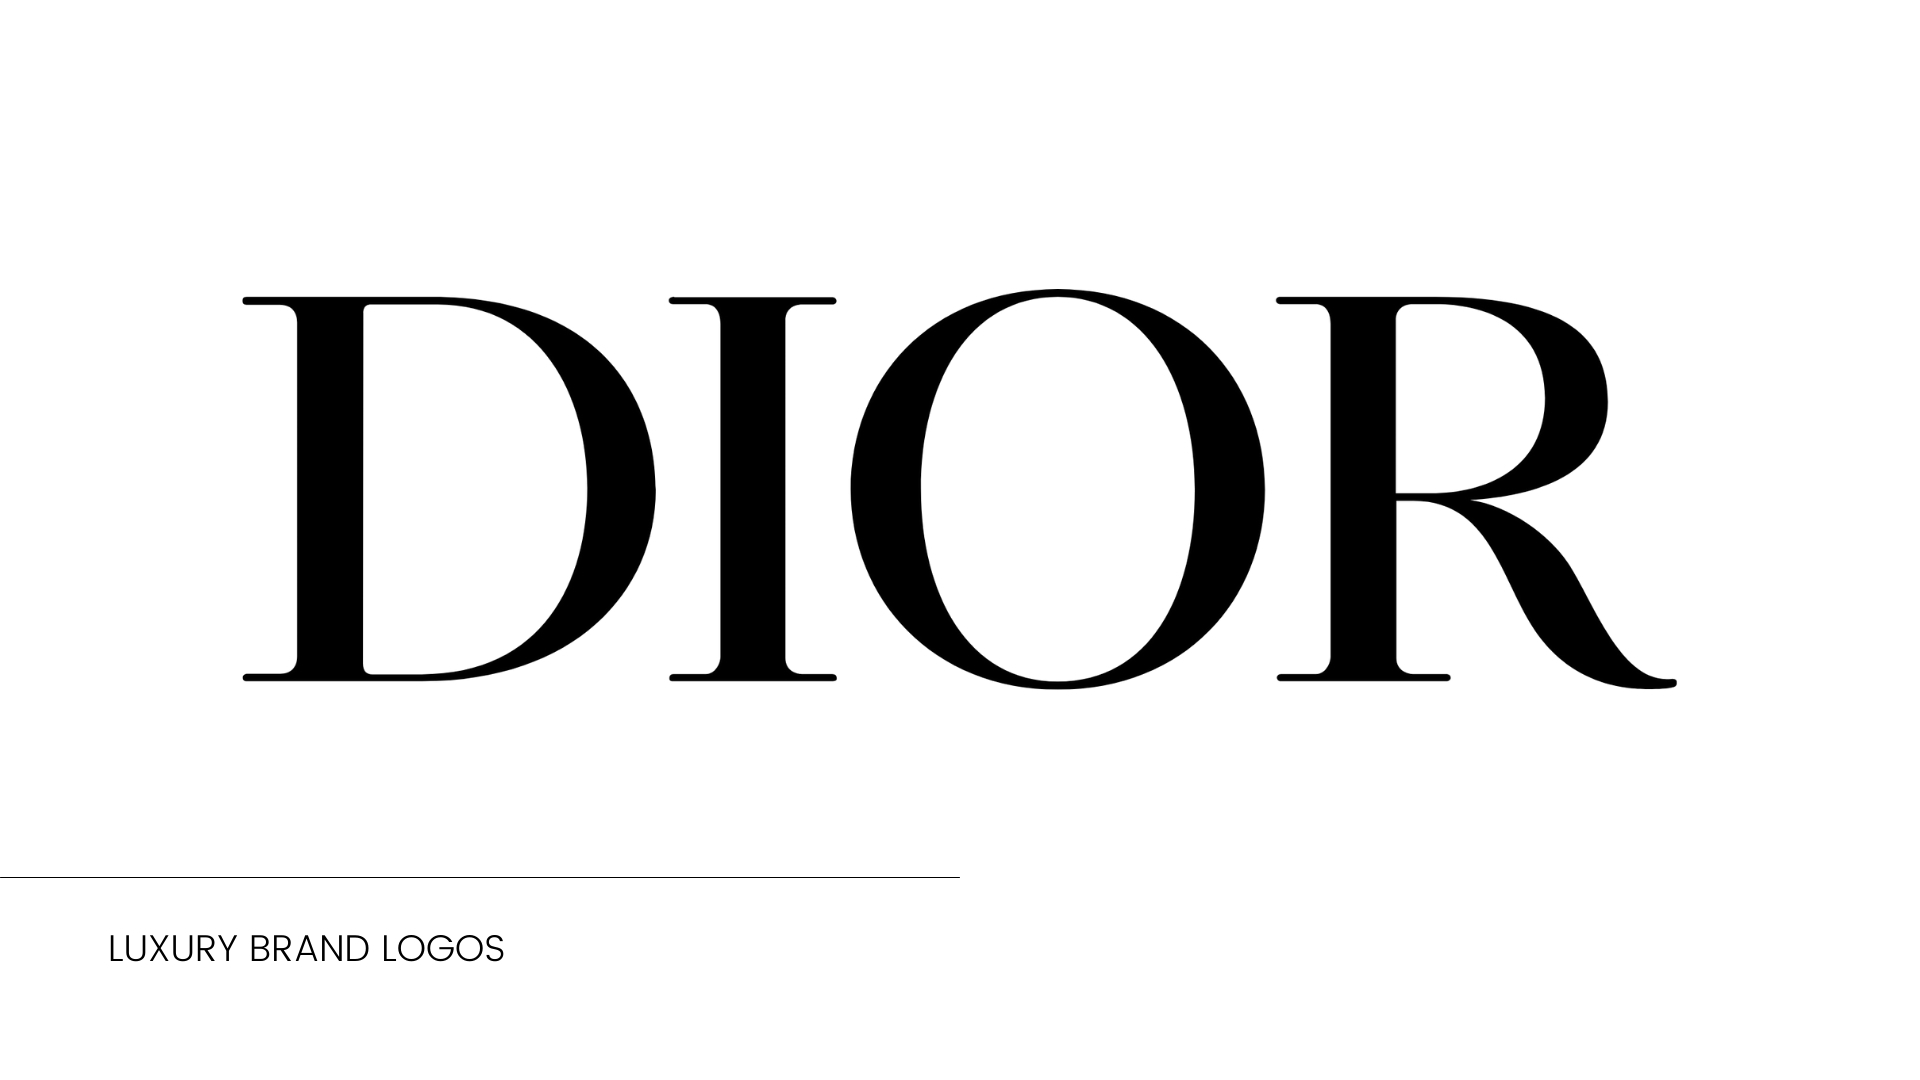 รวมประวัติของโลโก้ 4 แบรนด์ดัง Chanel Dior Gucci Hermes